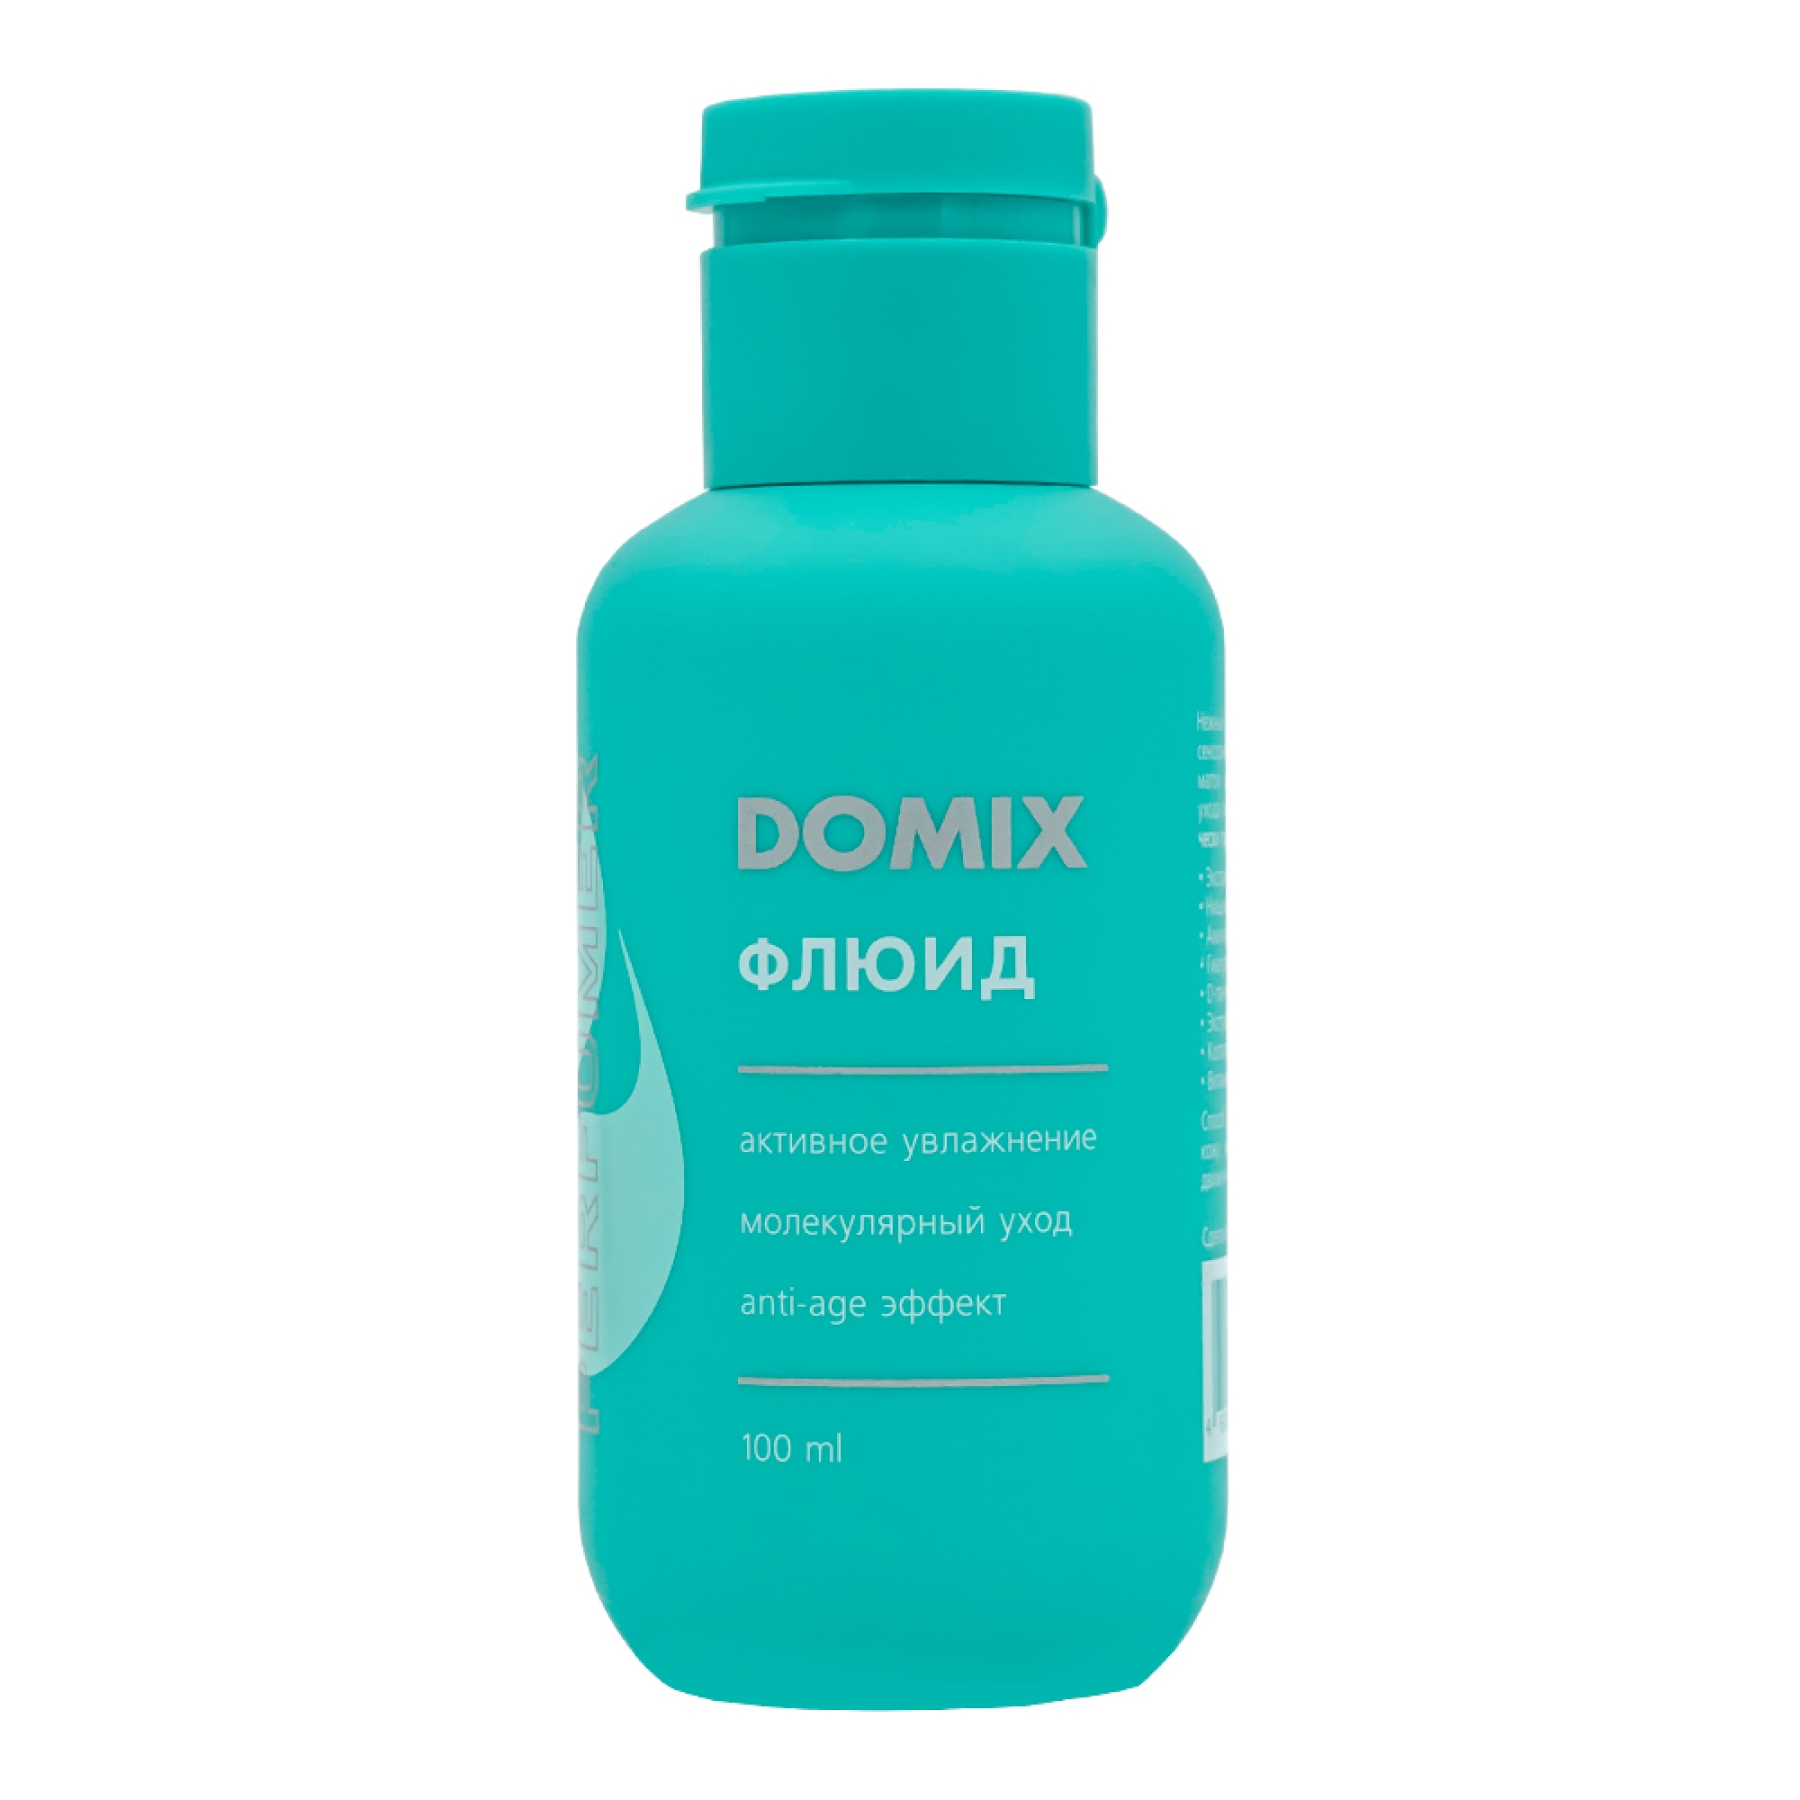 Флюид Domix PERFUMER, 100 мл domix dgp крем для рук и тела sensational solution увлажняющий вишневый аромат 260